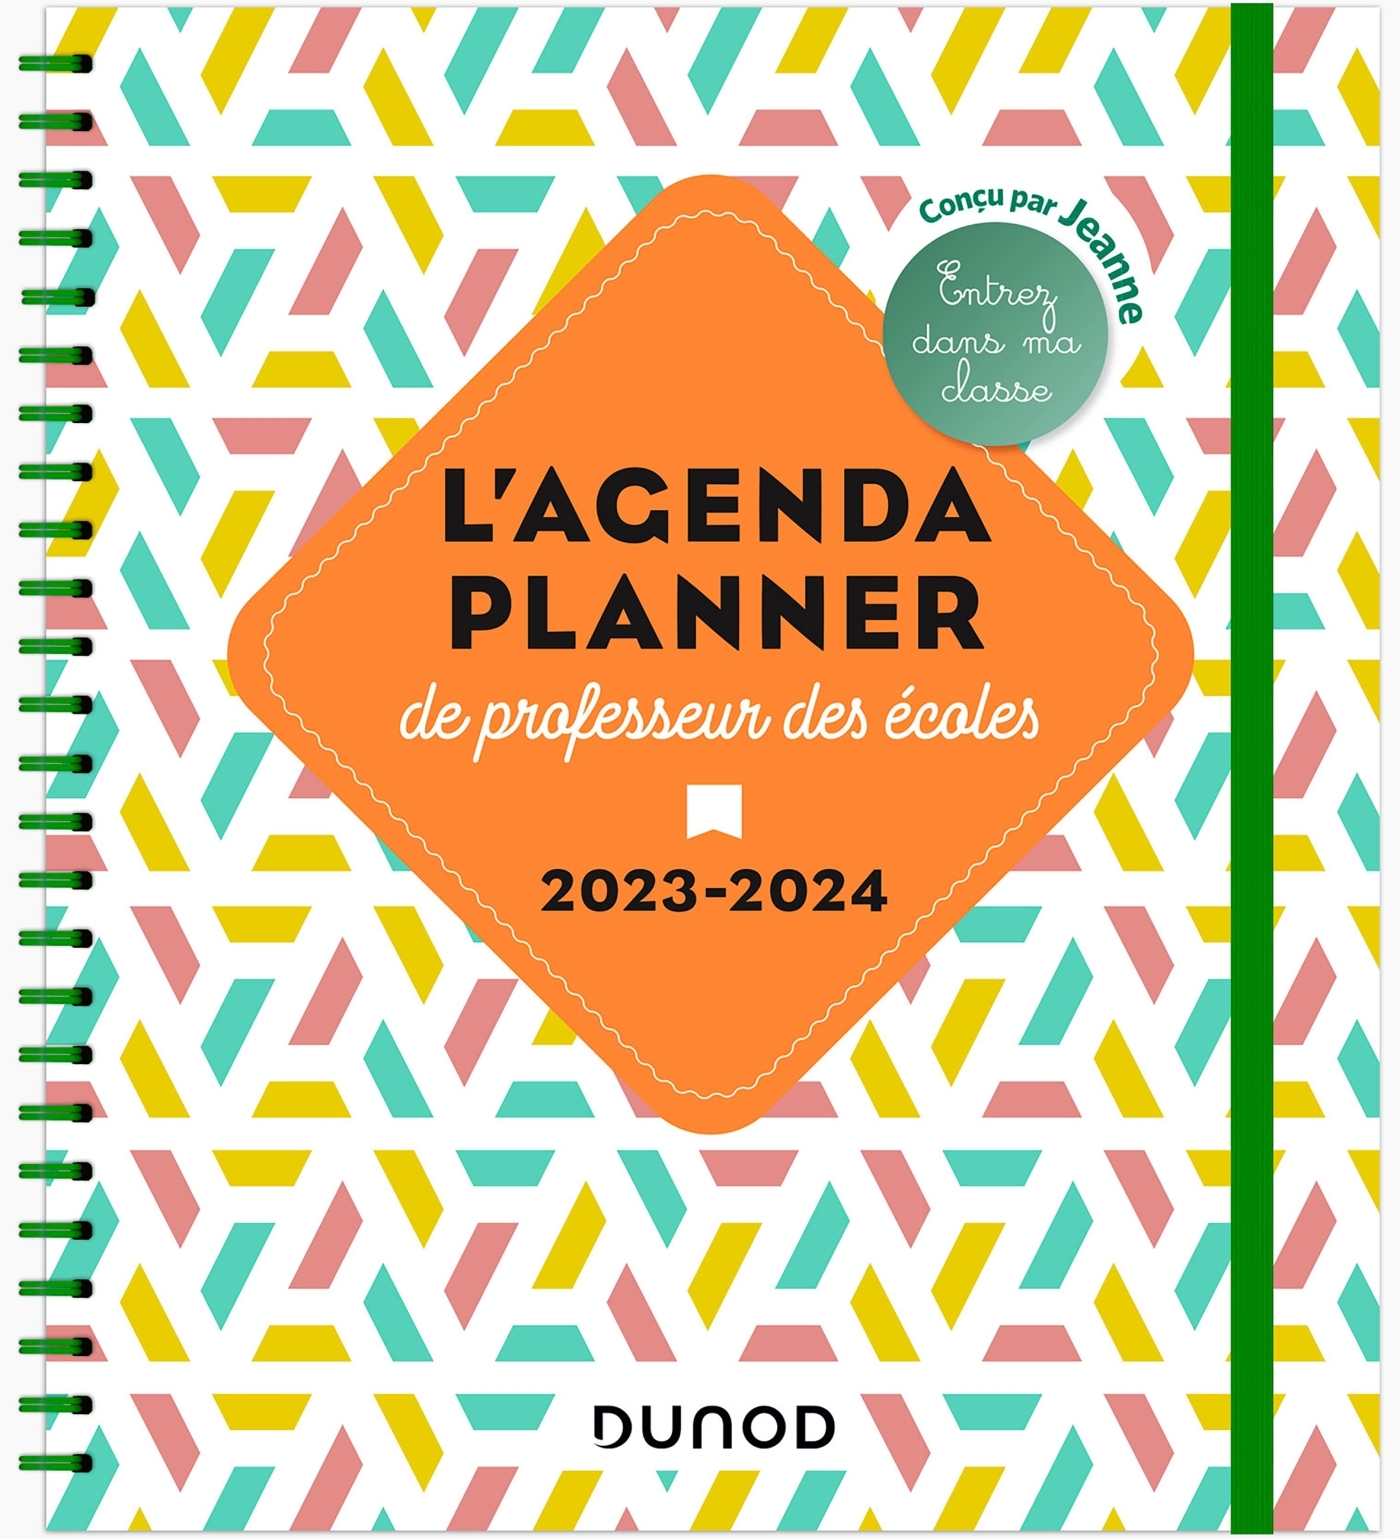 Mon planner journal de prof d'école - Edition 2023-2024 - Répertoire,  agenda